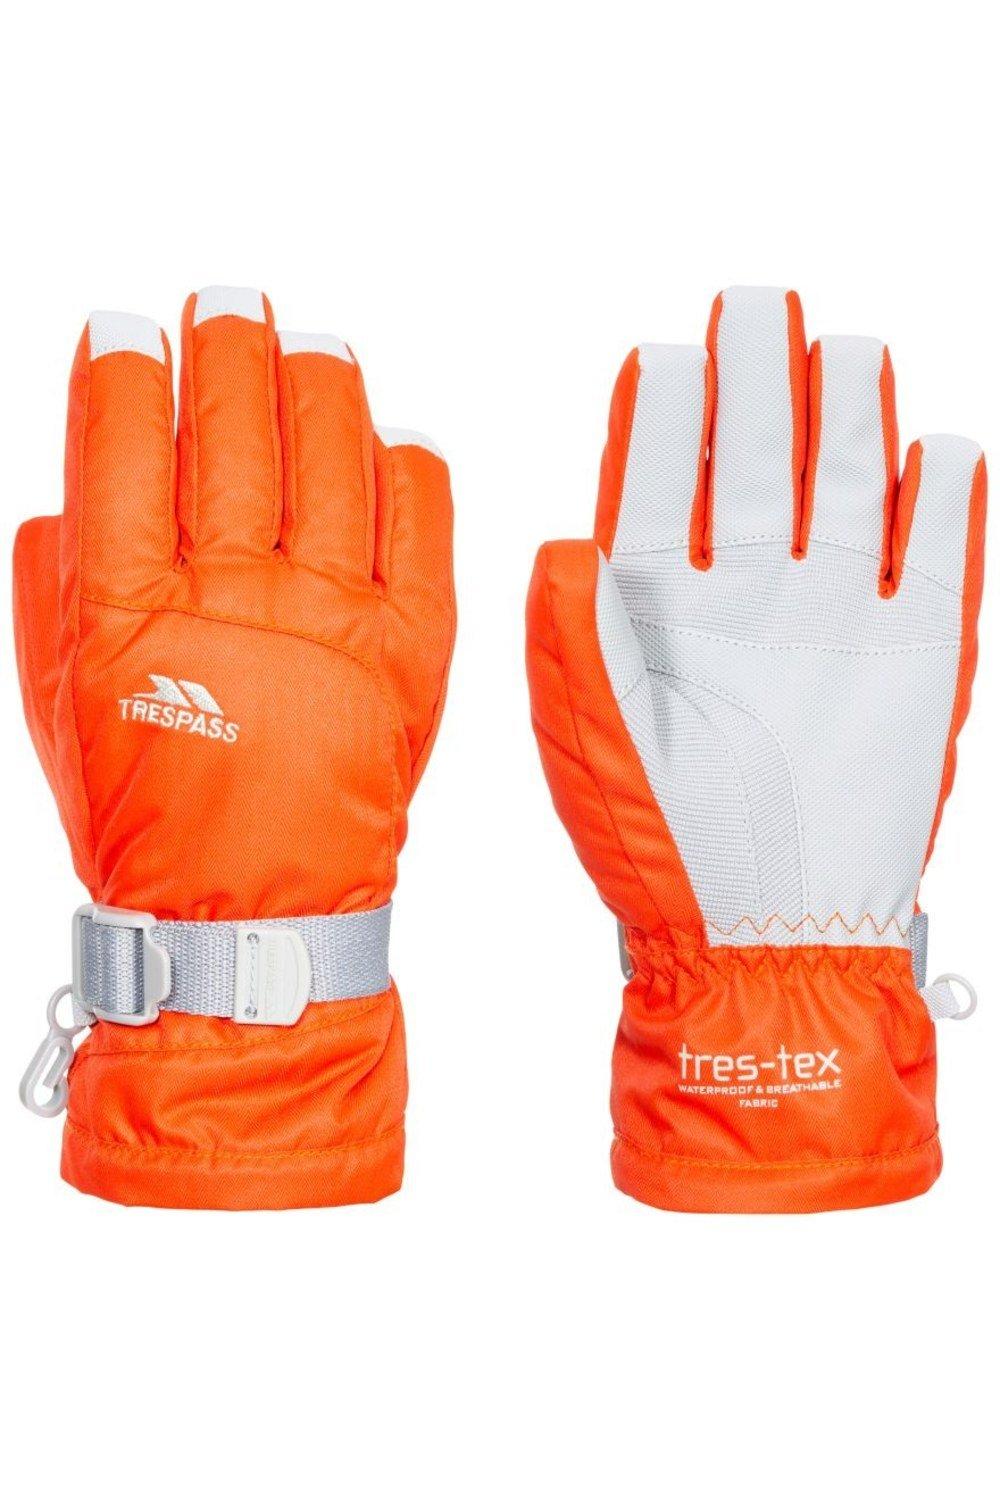 Водонепроницаемые перчатки Simms Trespass, оранжевый искусственные перчатки 3 мм защита от царапин для дайвинга с регулируемым ремешком сохраняет тепло для подводной охоты каякинга